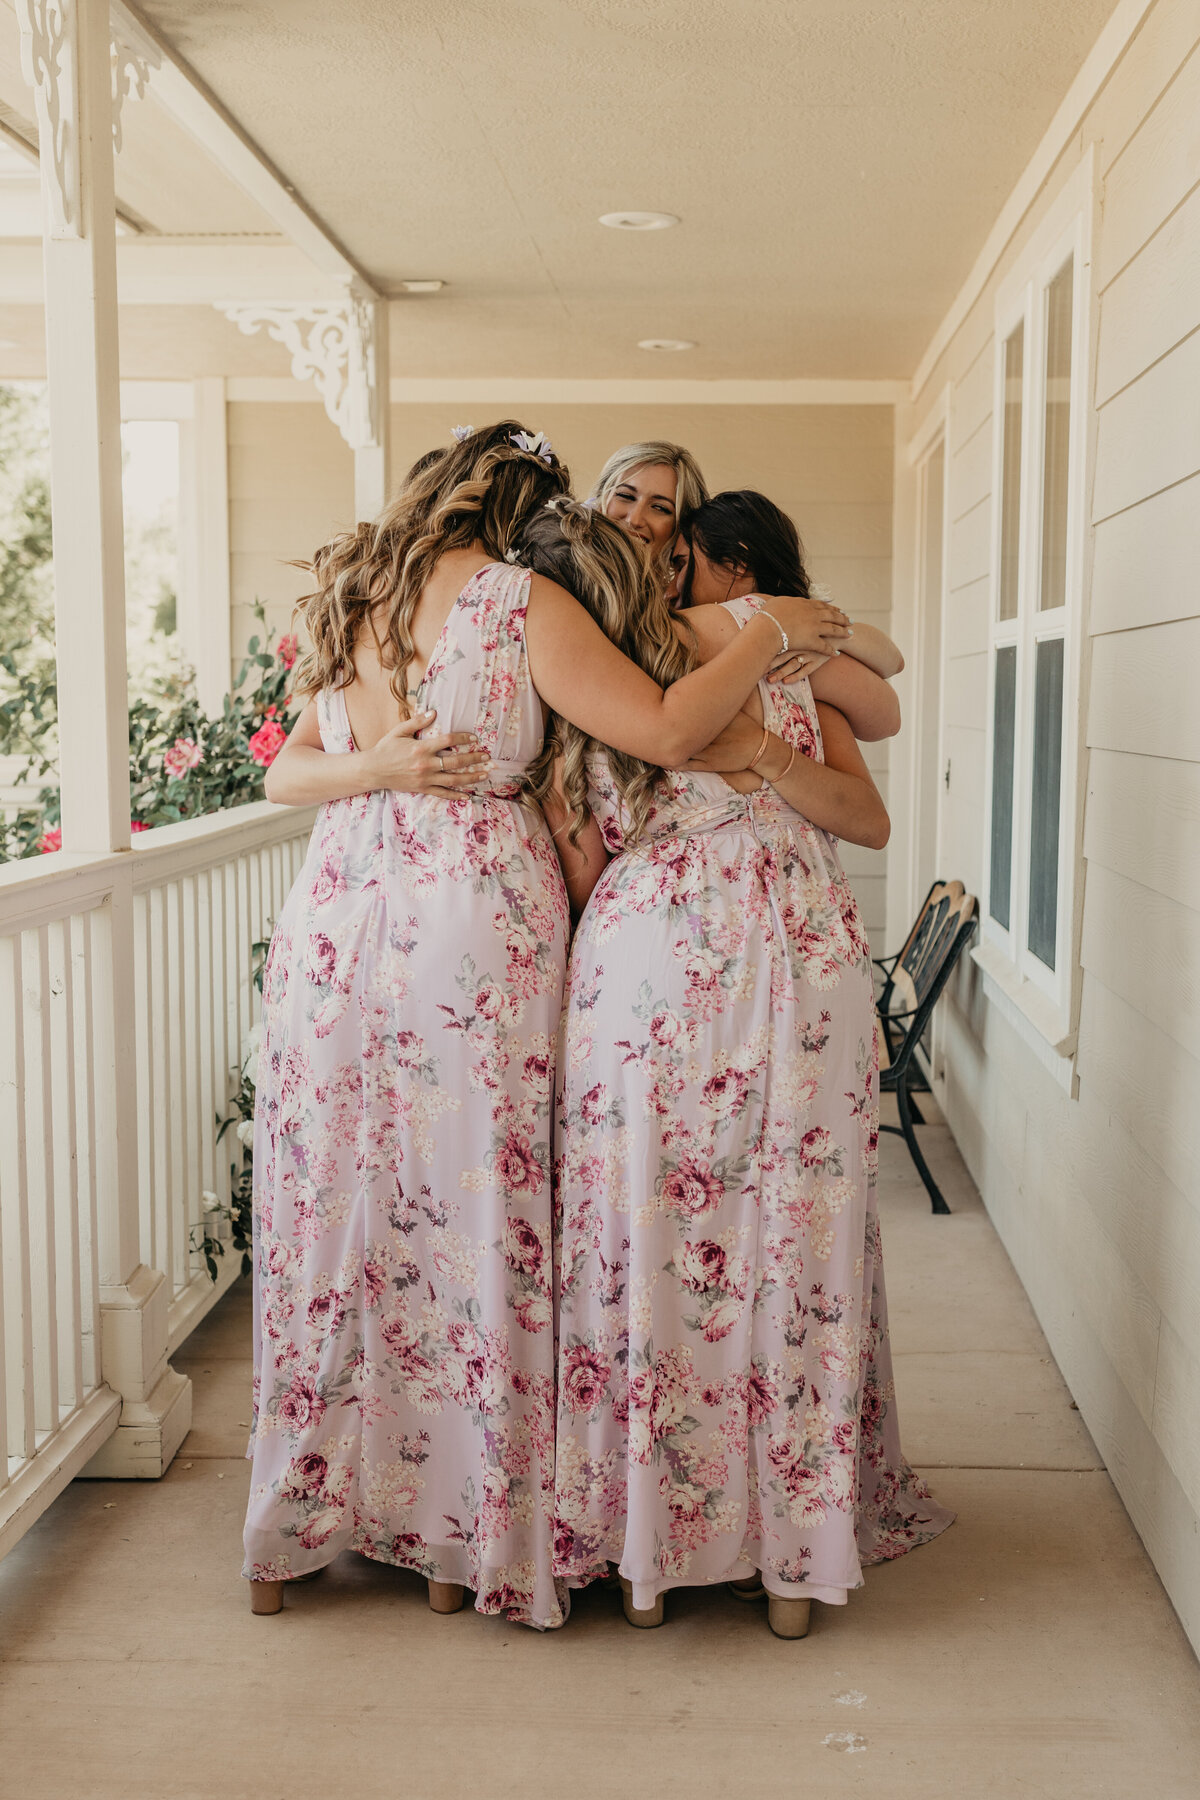 Maralyn-Estate-Garden-Atascadero-CA-wedding-bride-bridesmaids-hugging-after-first-look